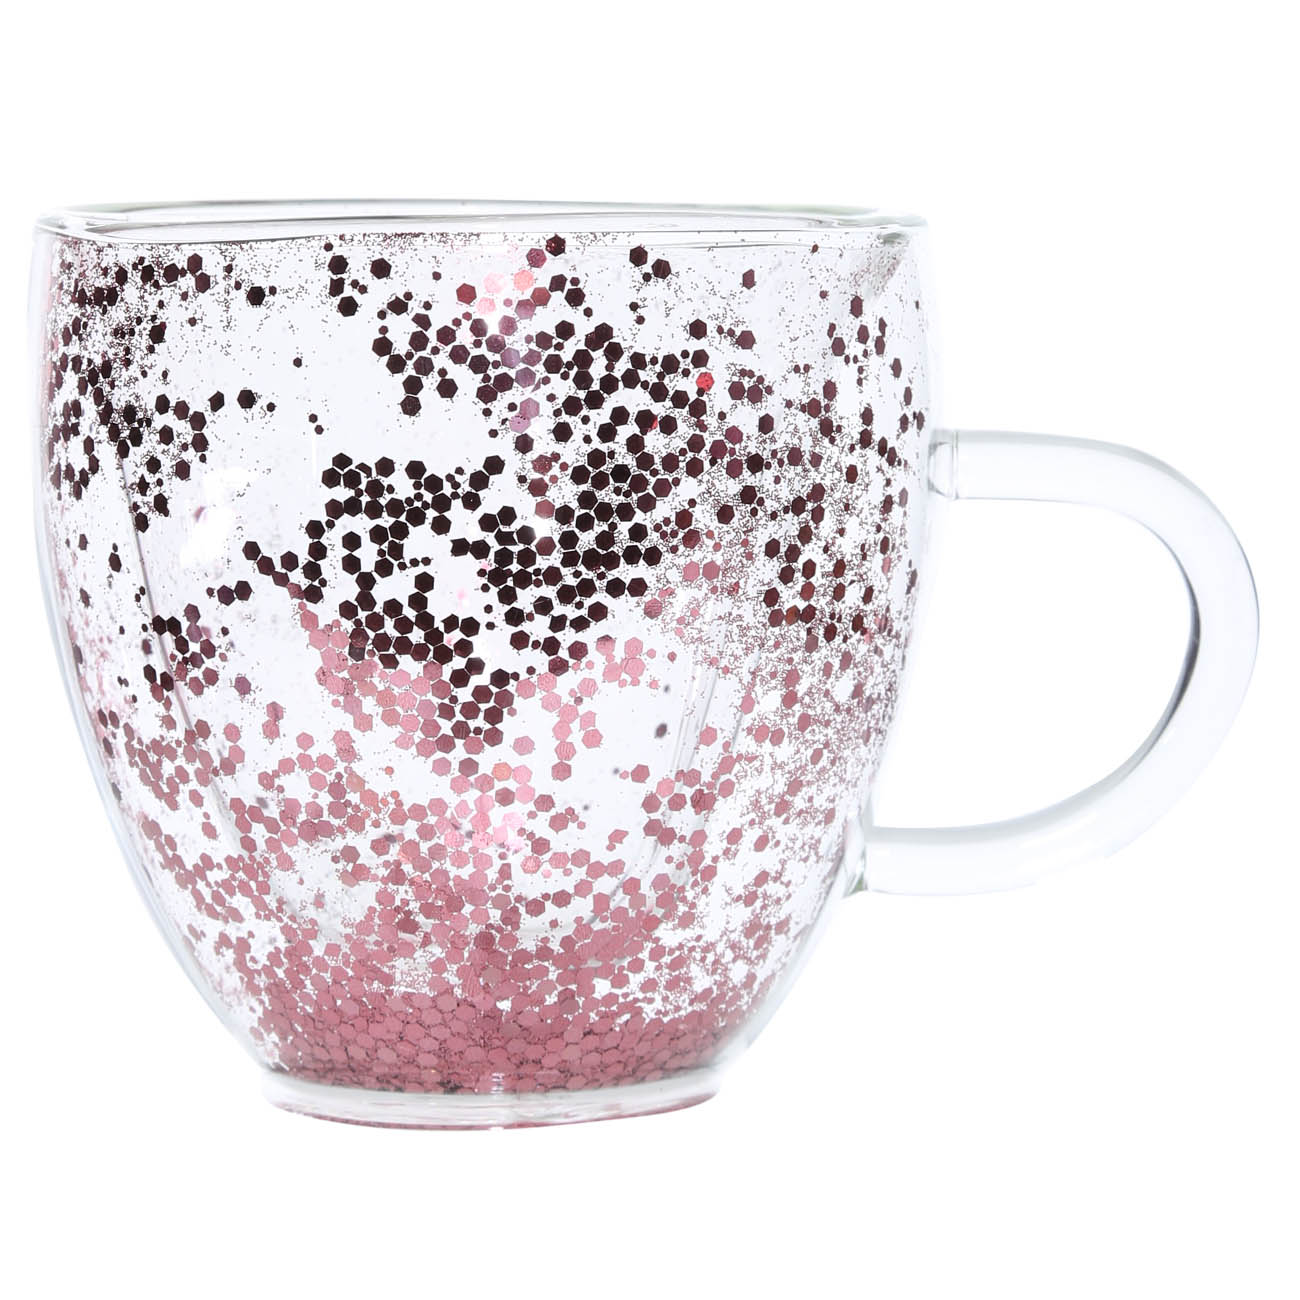 Кружка, 250 мл, 2 шт, стекло Б, с розовыми блестками, Heart, Air sparkly изображение № 2